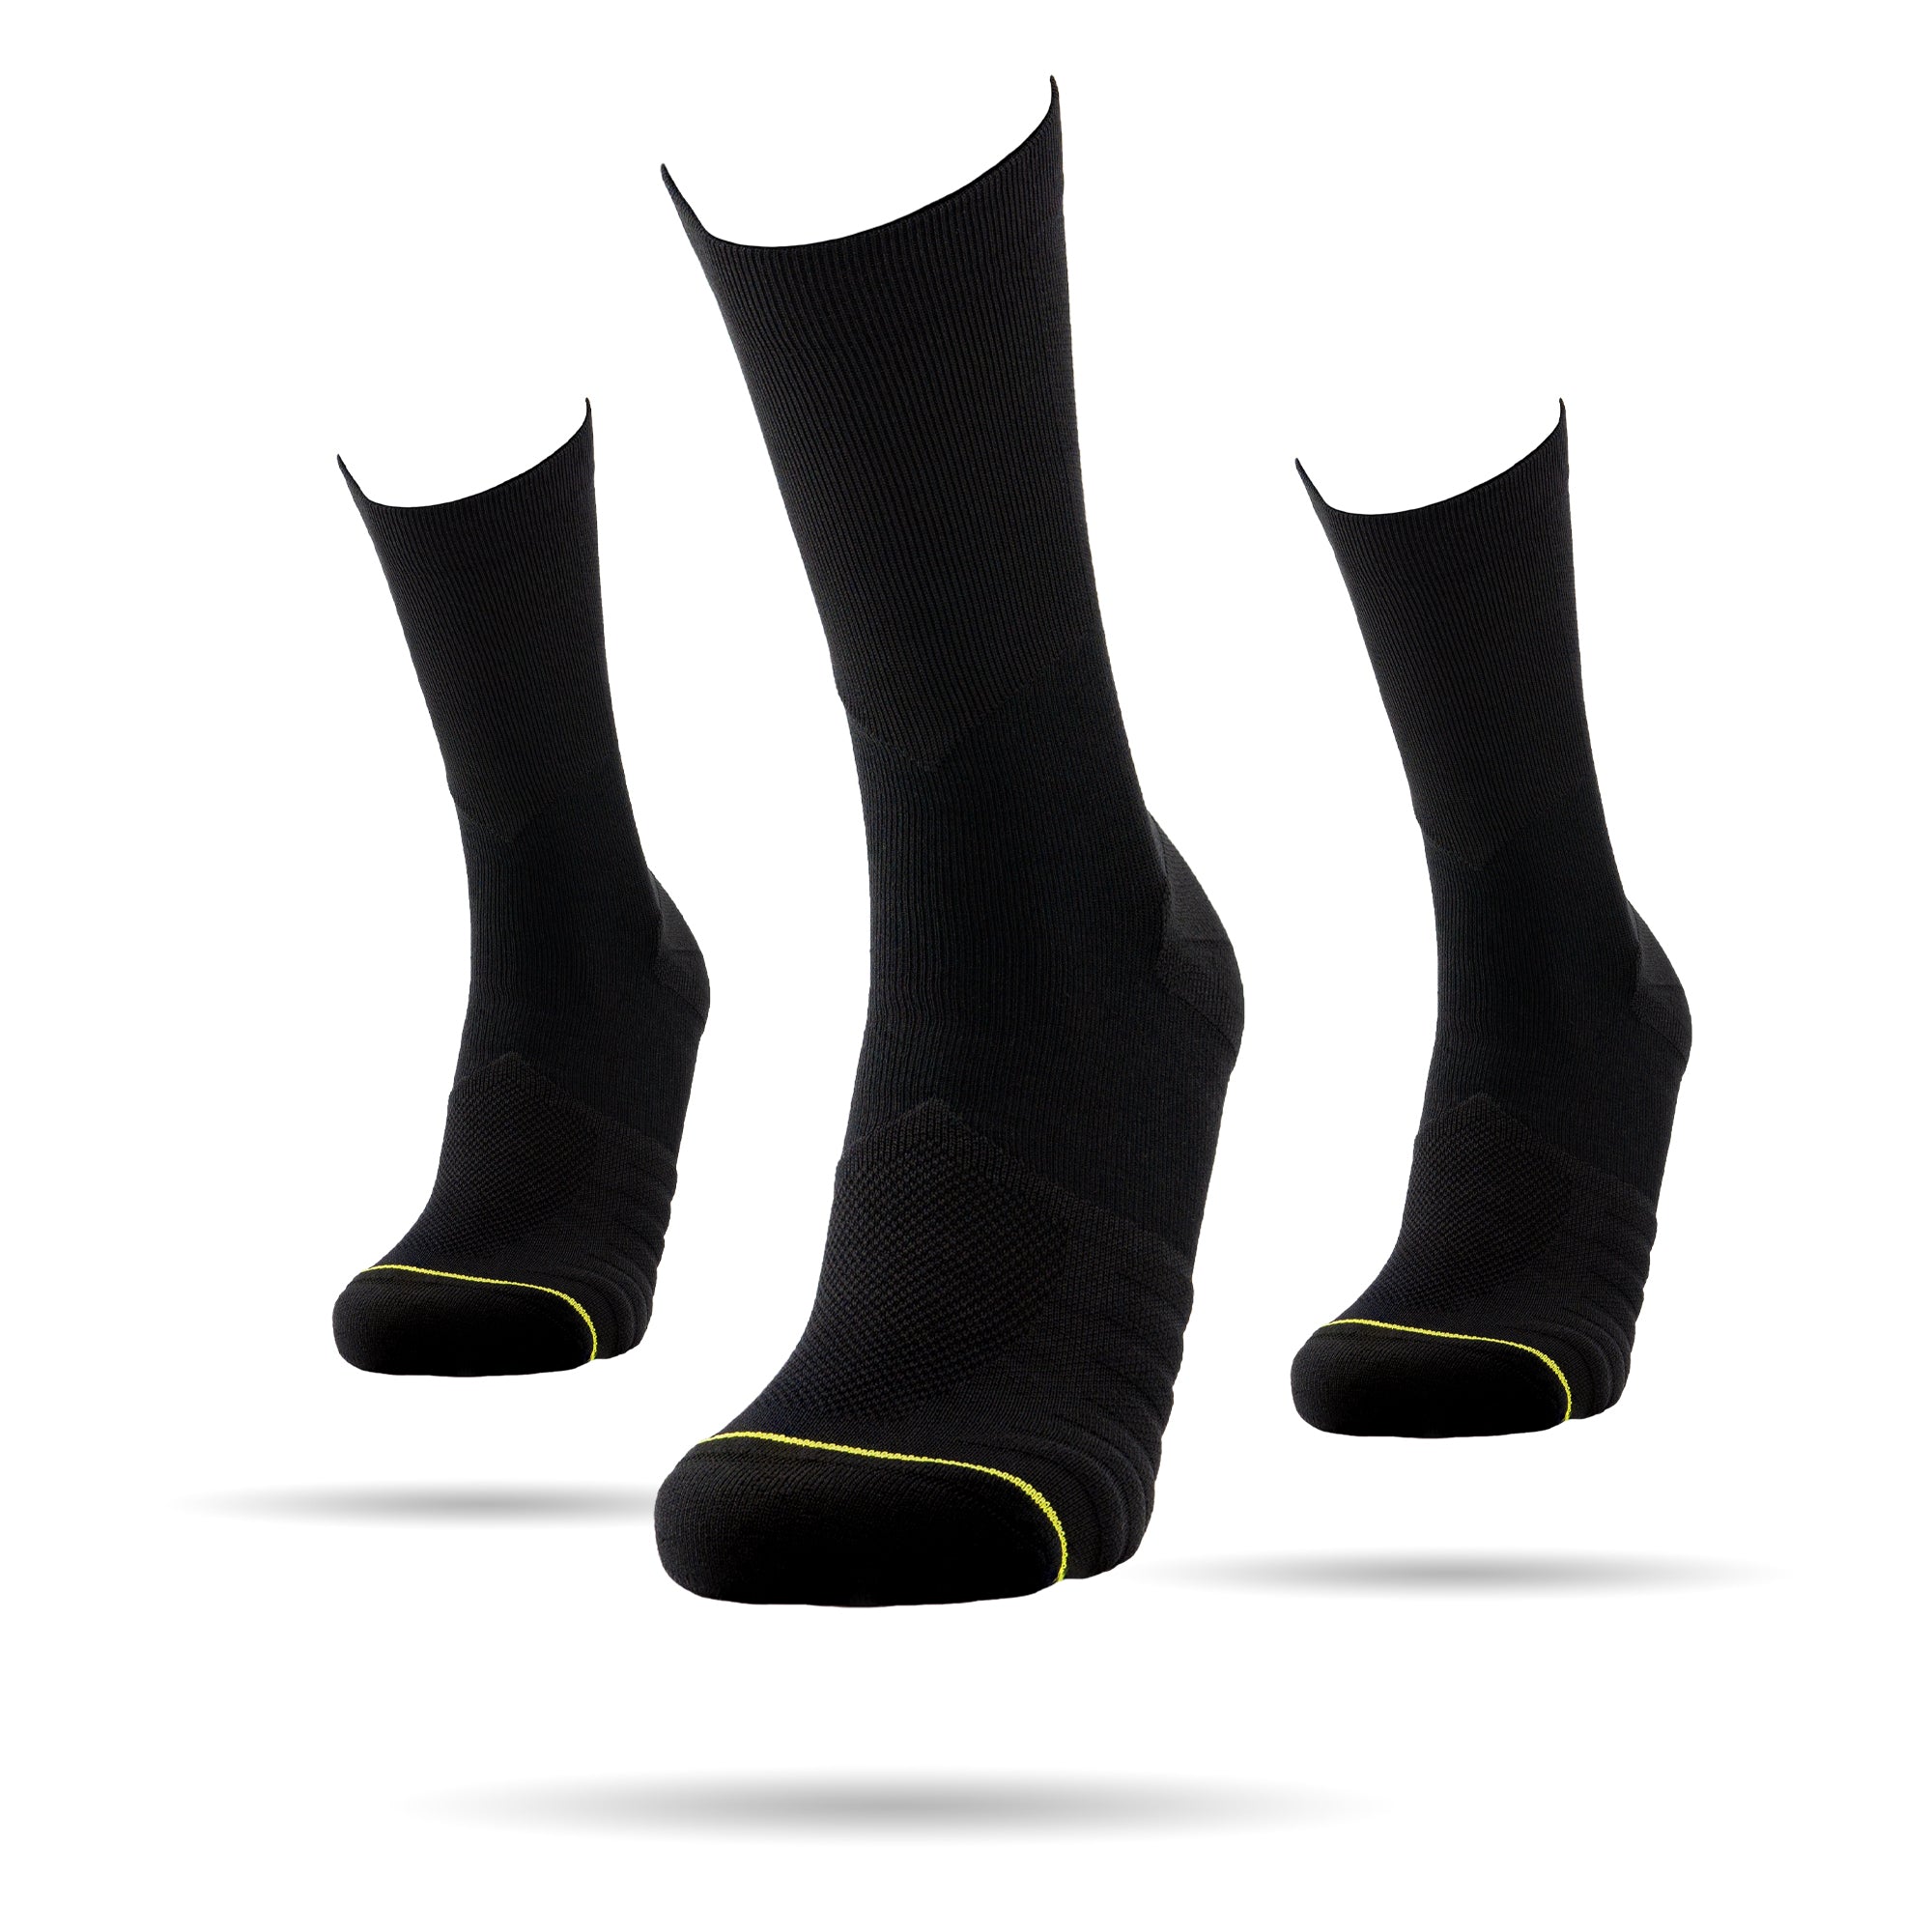 Drei Socken, Dreierpack des All Black Sockens